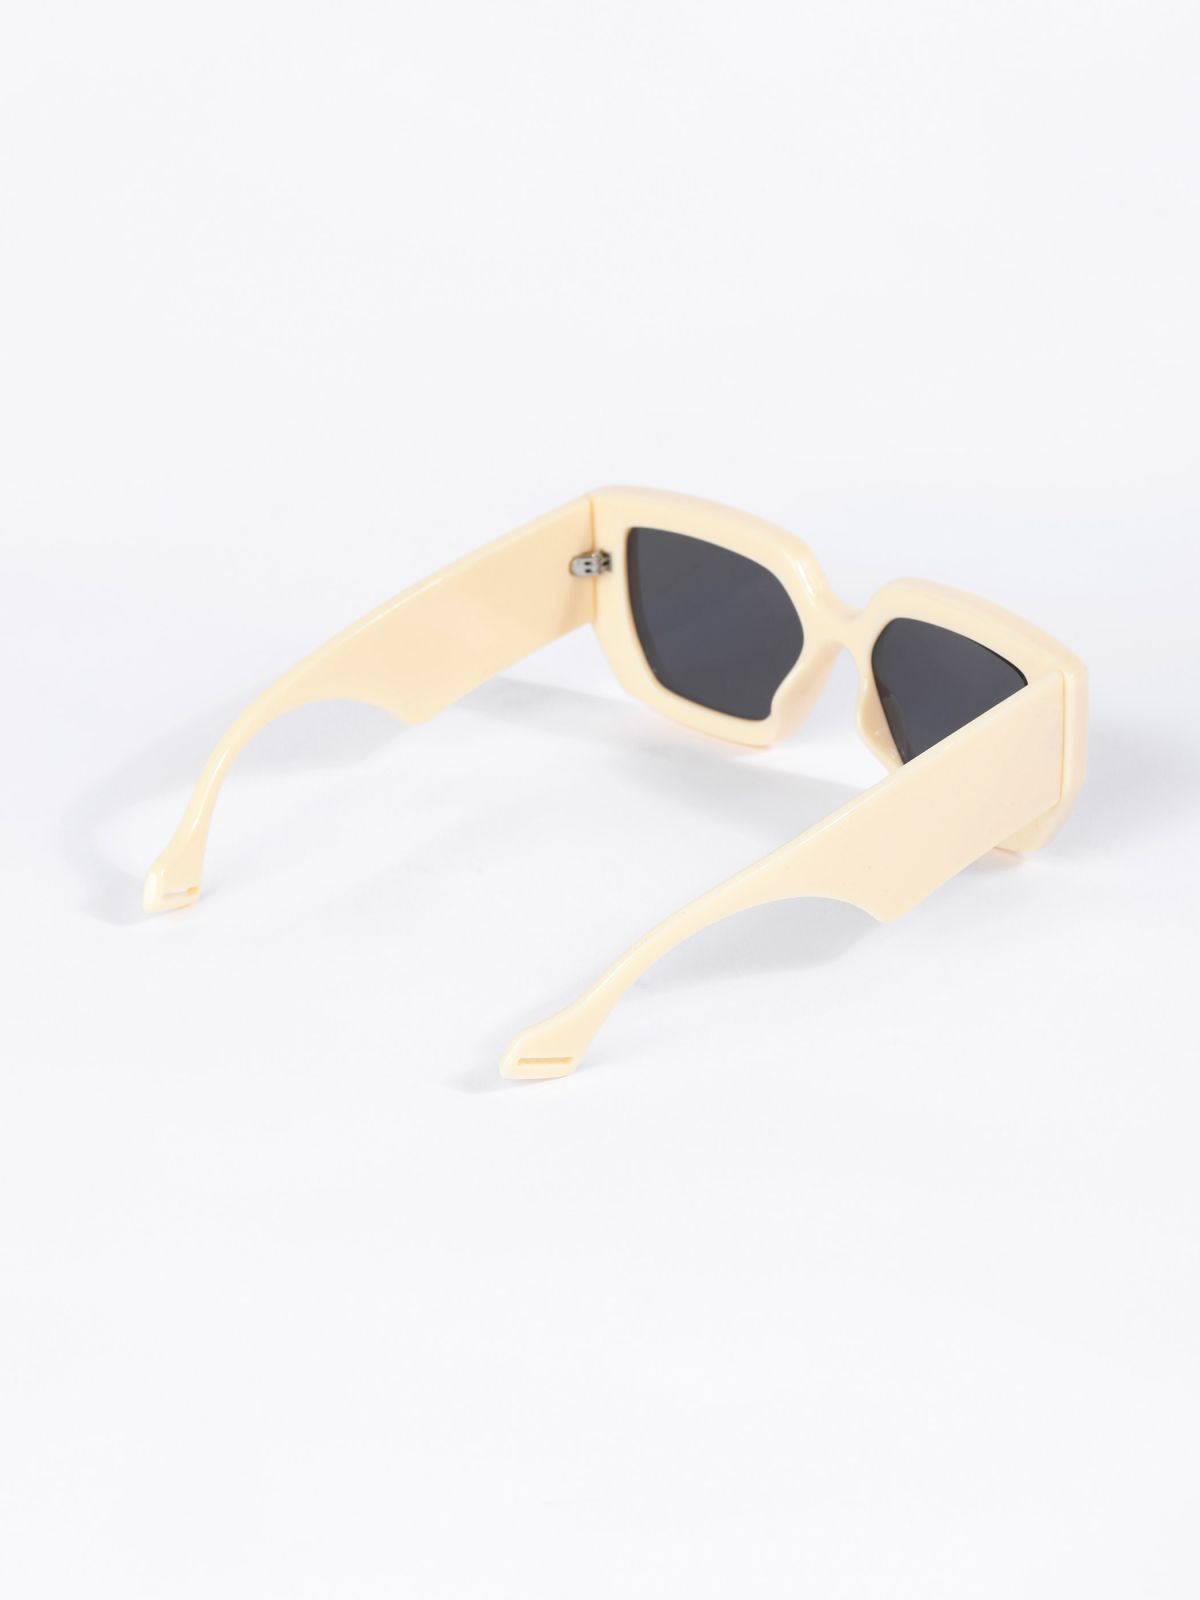  משקפי שמש מרובעיים / TX Eyewear Collection של TERMINAL X